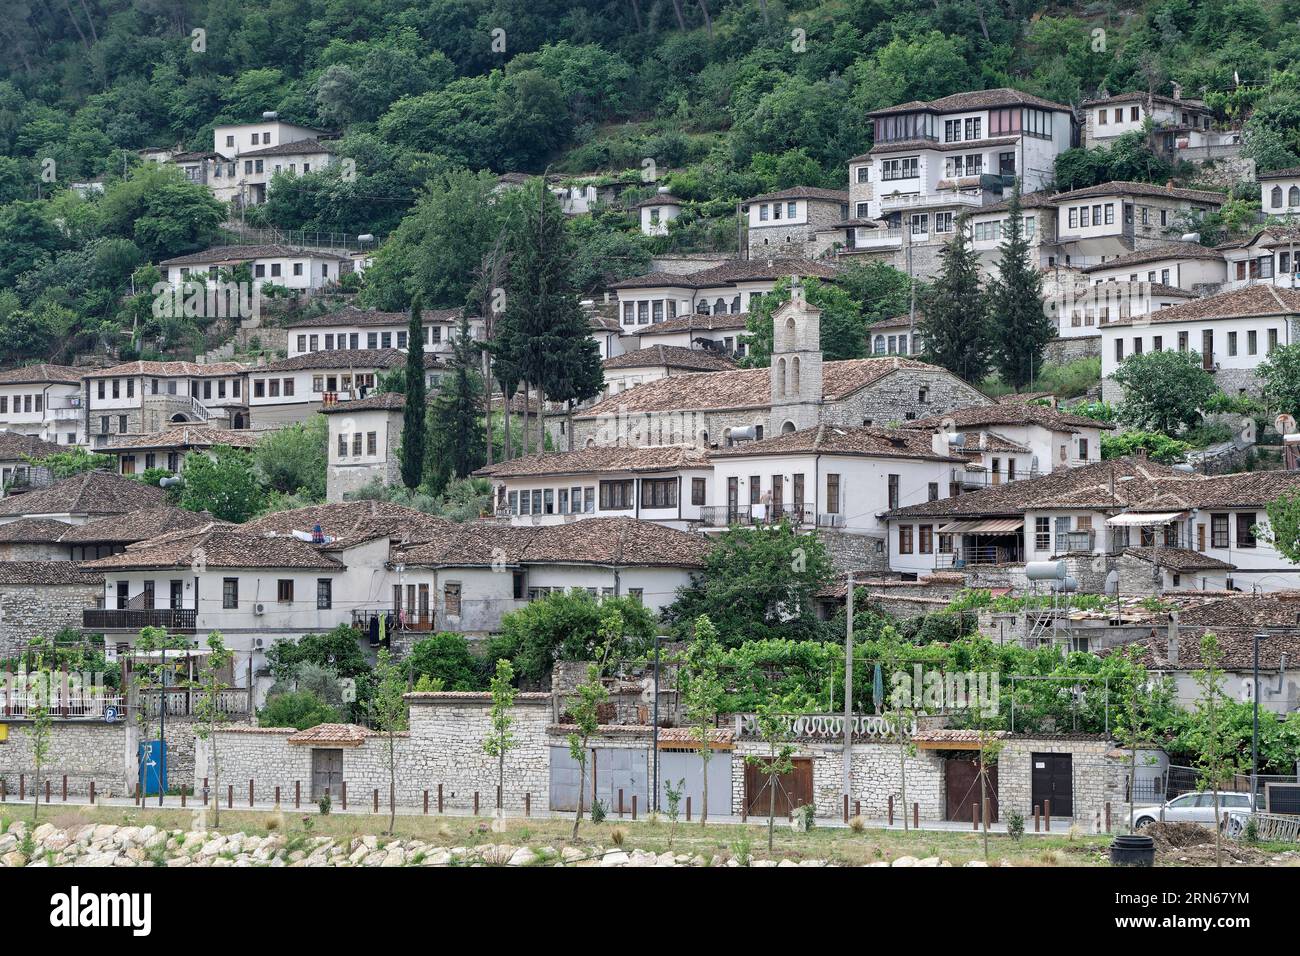 Die weißen Häuser im Stadtteil Gorica der südalbanischen Stadt Berat gehören zum UNESCO-Weltkulturerbe. Berat, Albanien, Südosteuropa Stockfoto